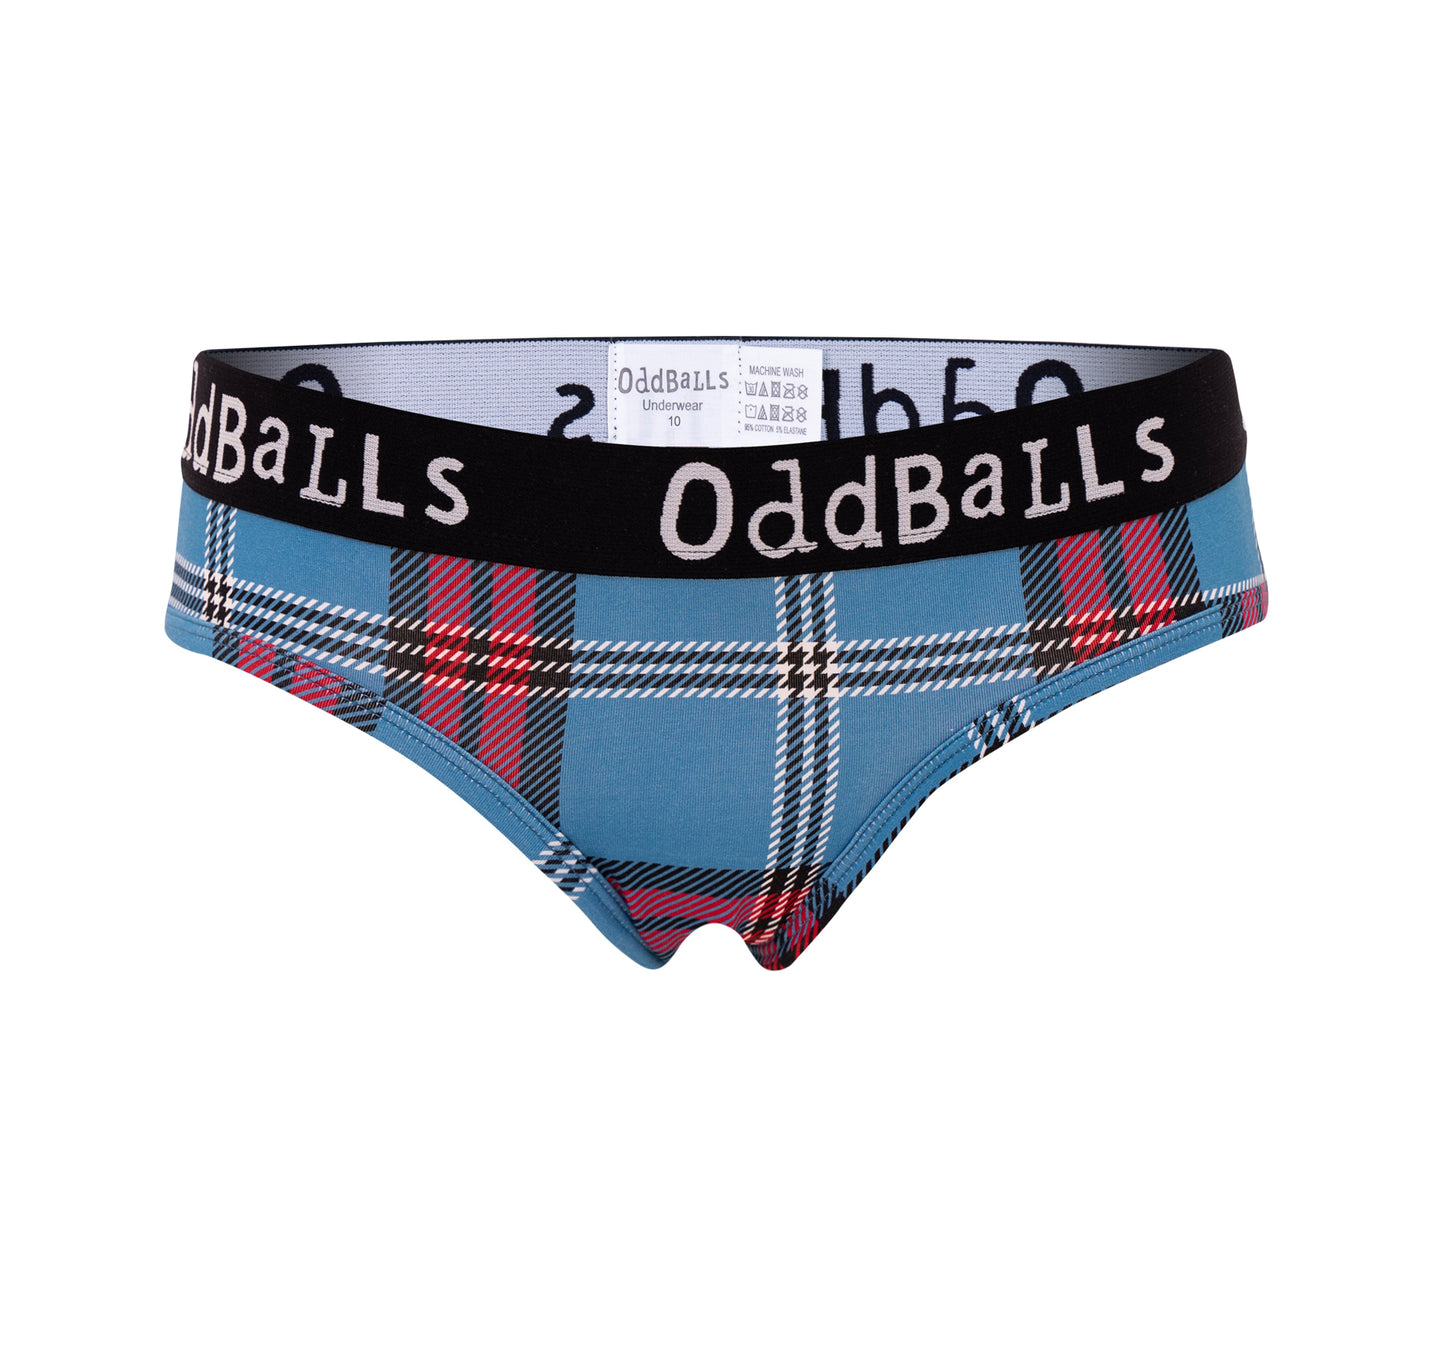 Brief underwear with University of Edinburgh tartan. 